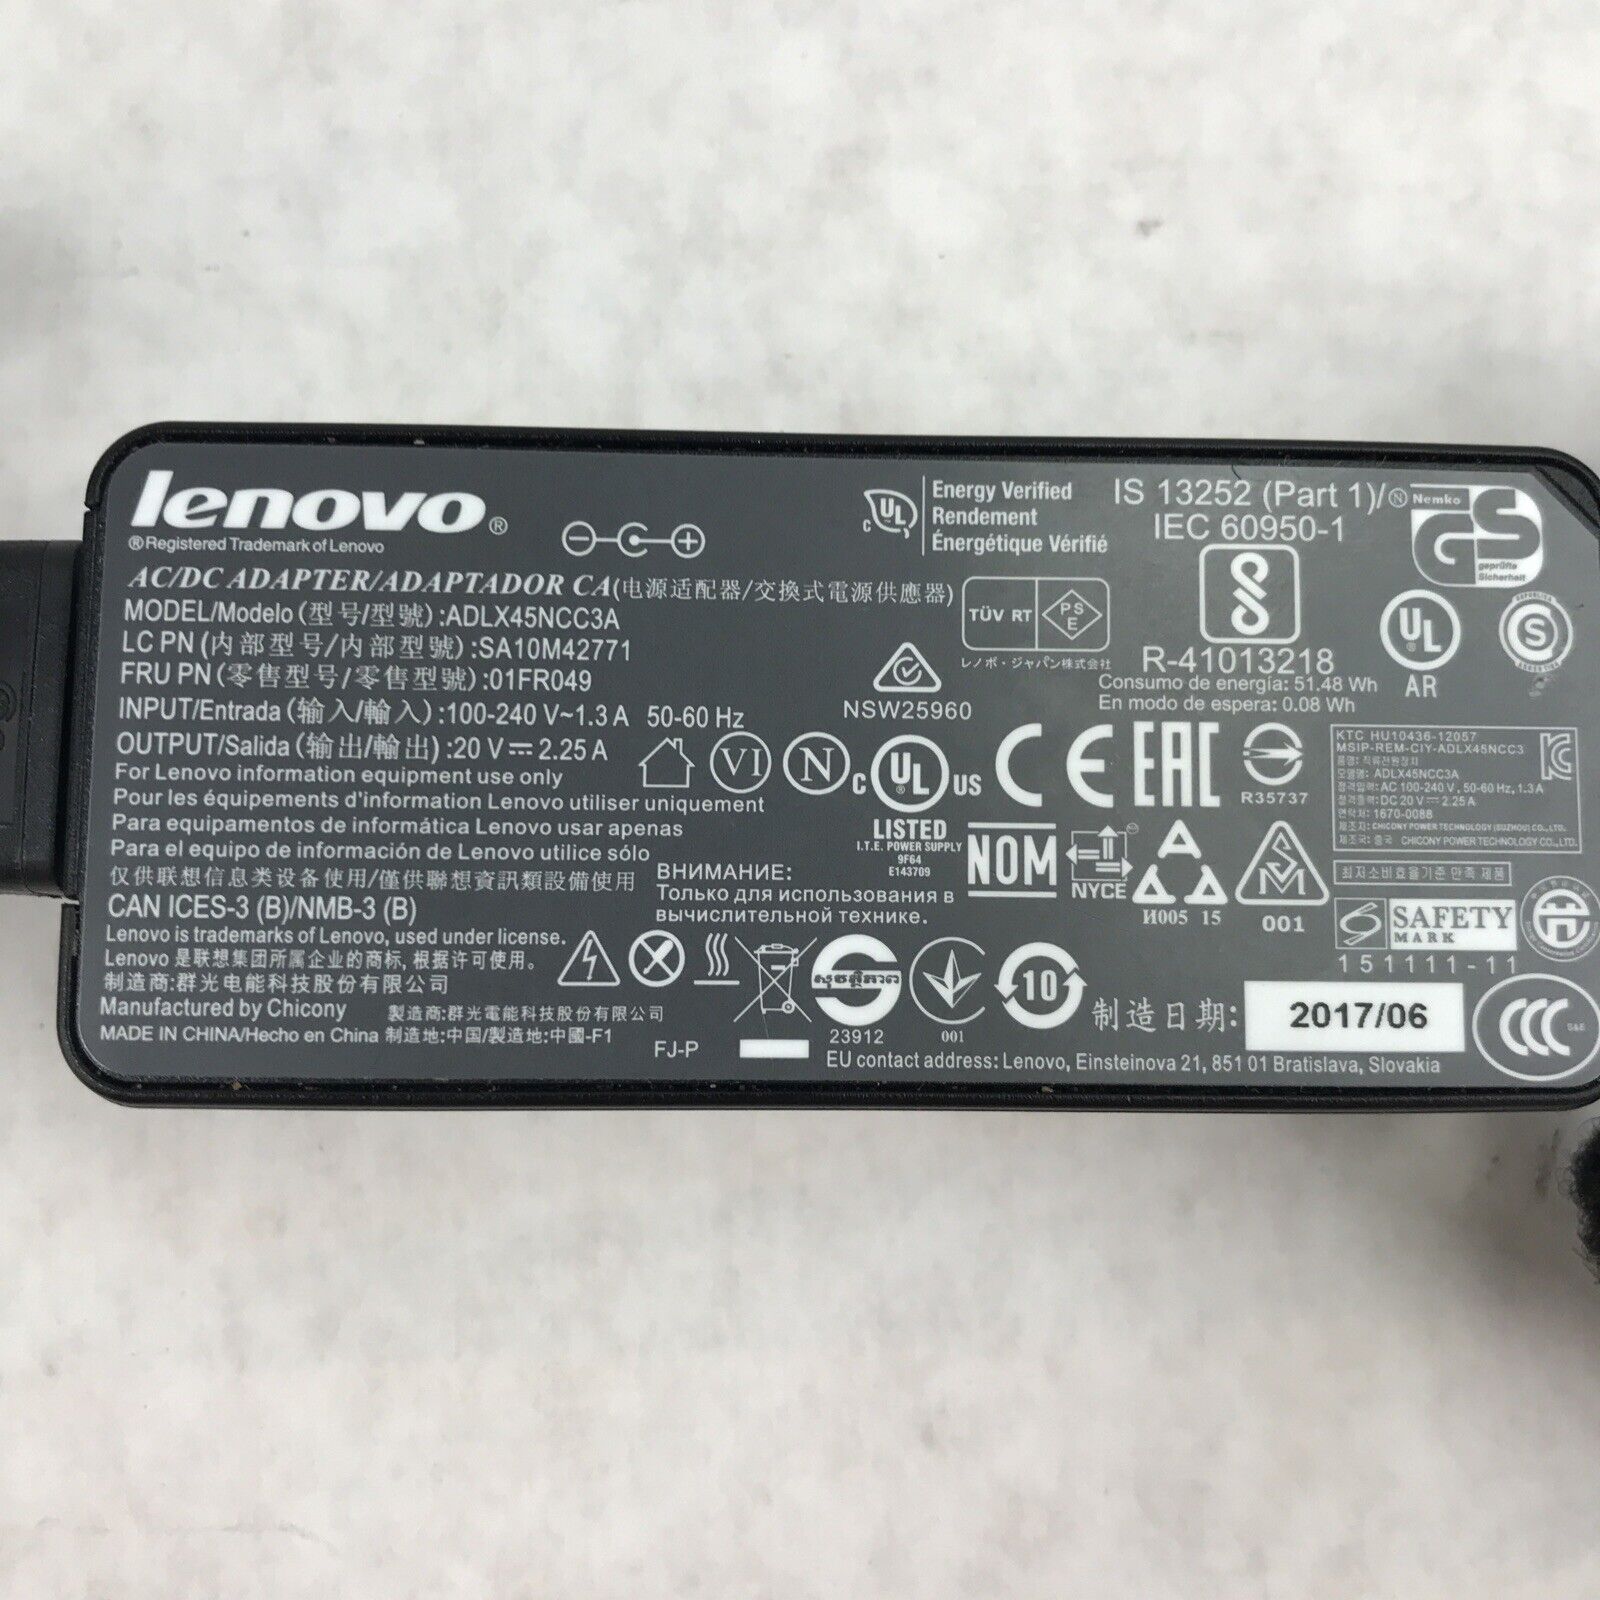 Lenovo ADLX45NCC3A 20V 2.25A 60Hz 01FR049 AC/DC Adapter SA10M42771